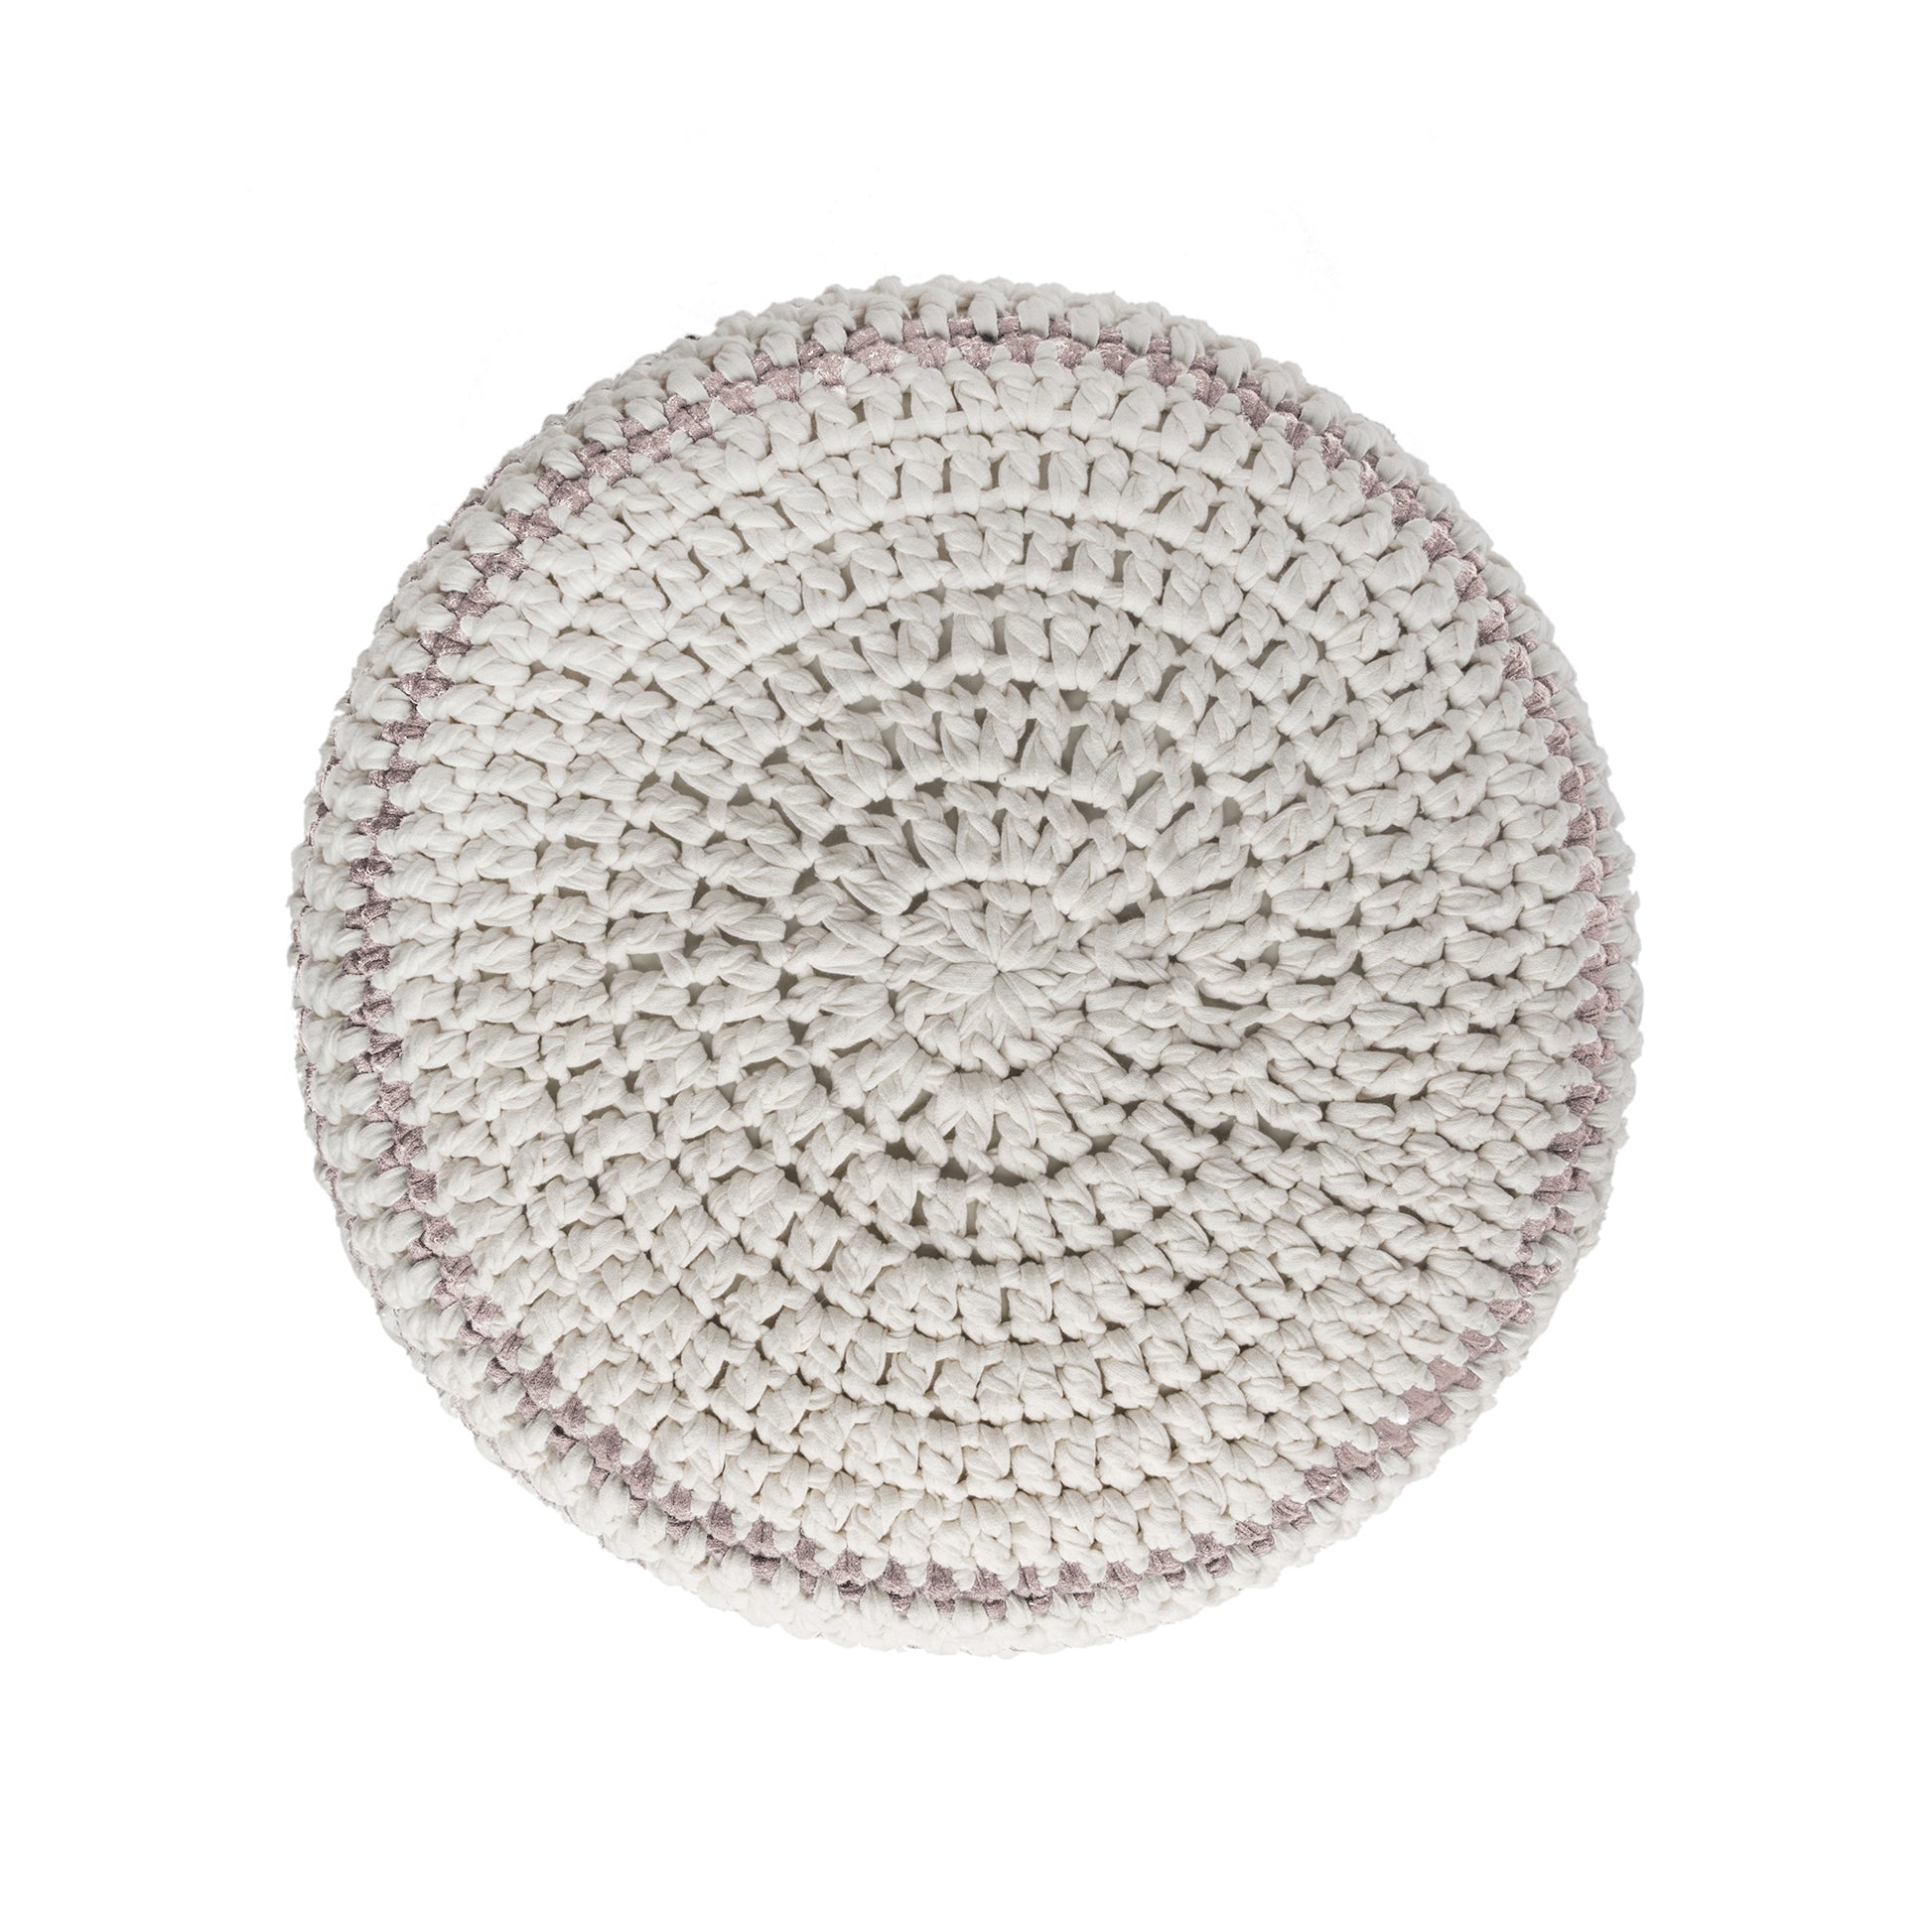 Puff de crochê artesanal listras, Rose, com fio 100% algodão.  Fechamento com zíper, possibilitando a remoção da capa para lavagem.  Dimensões: Altura - 30cm; Diâmetro - 60cm. 